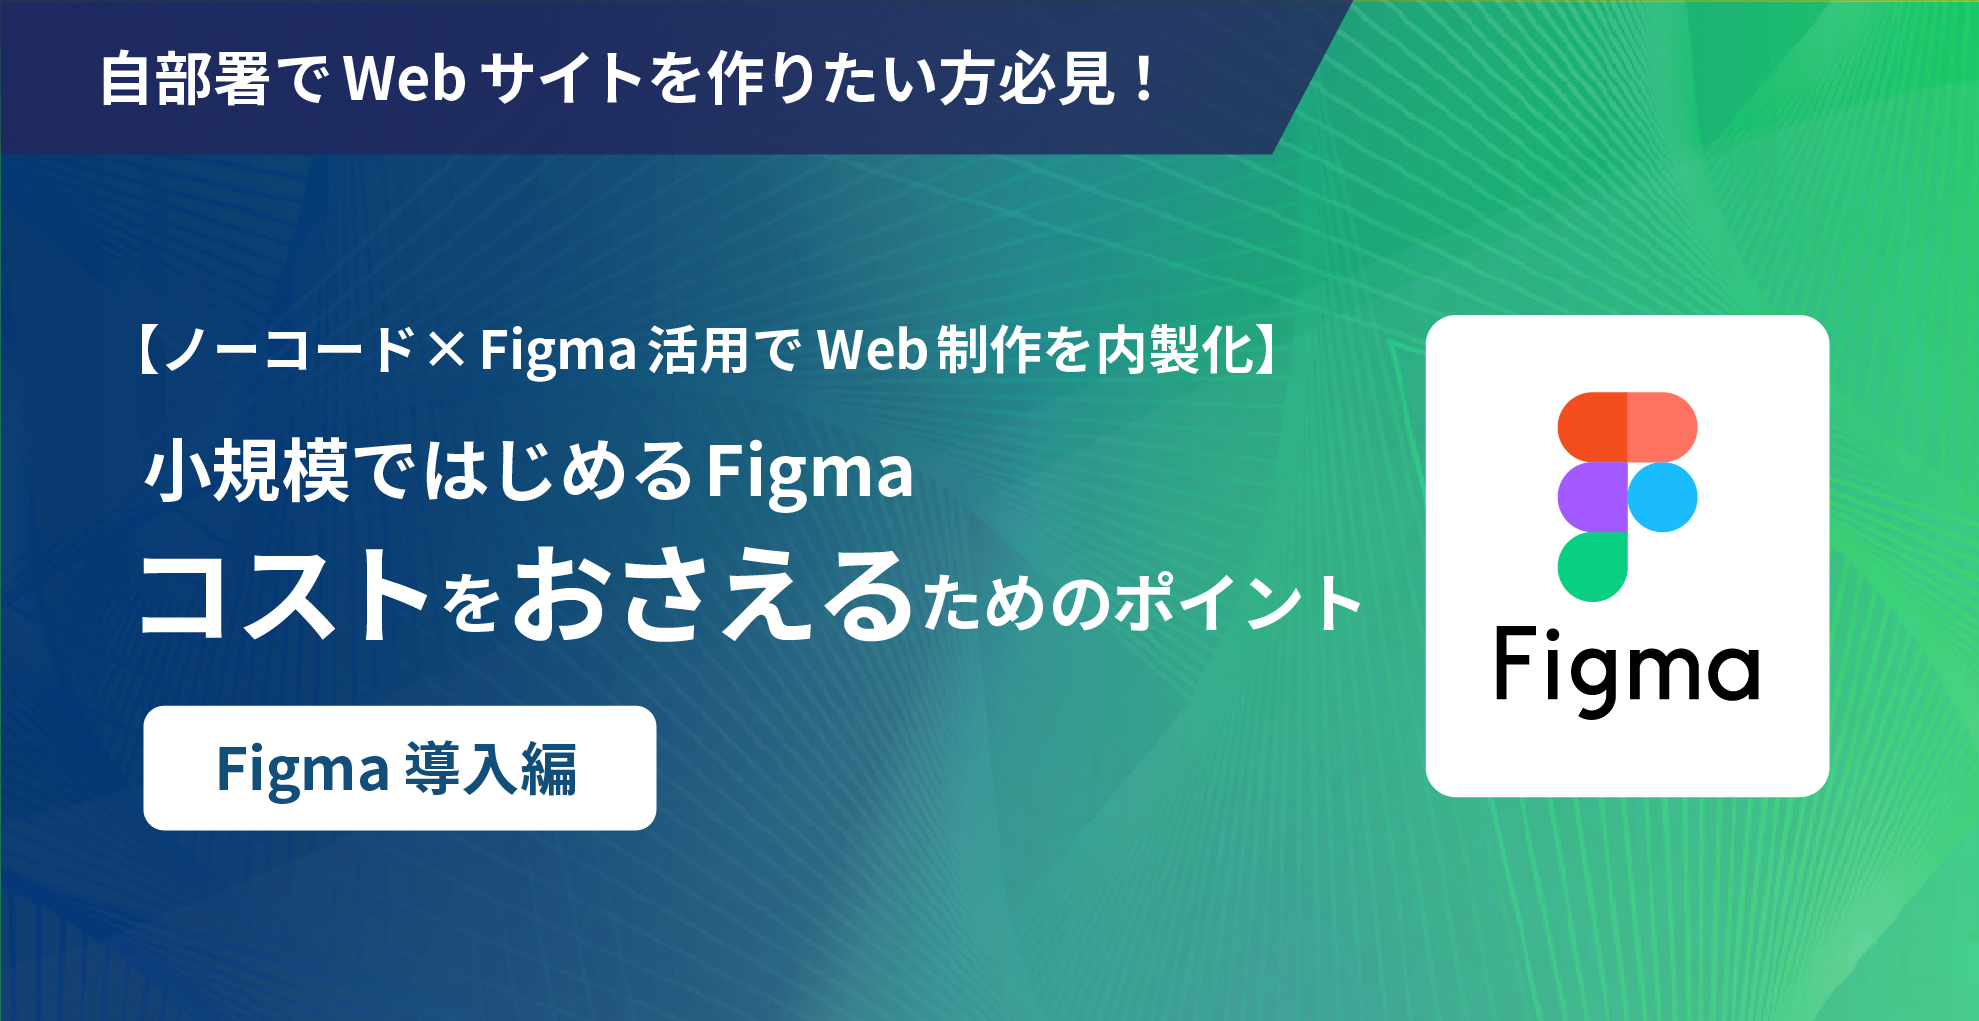 【ノーコード×Figma活用でWeb制作を内製化】小規模ではじめるFigma – コストをおさえるためのポイント – Figma導入編